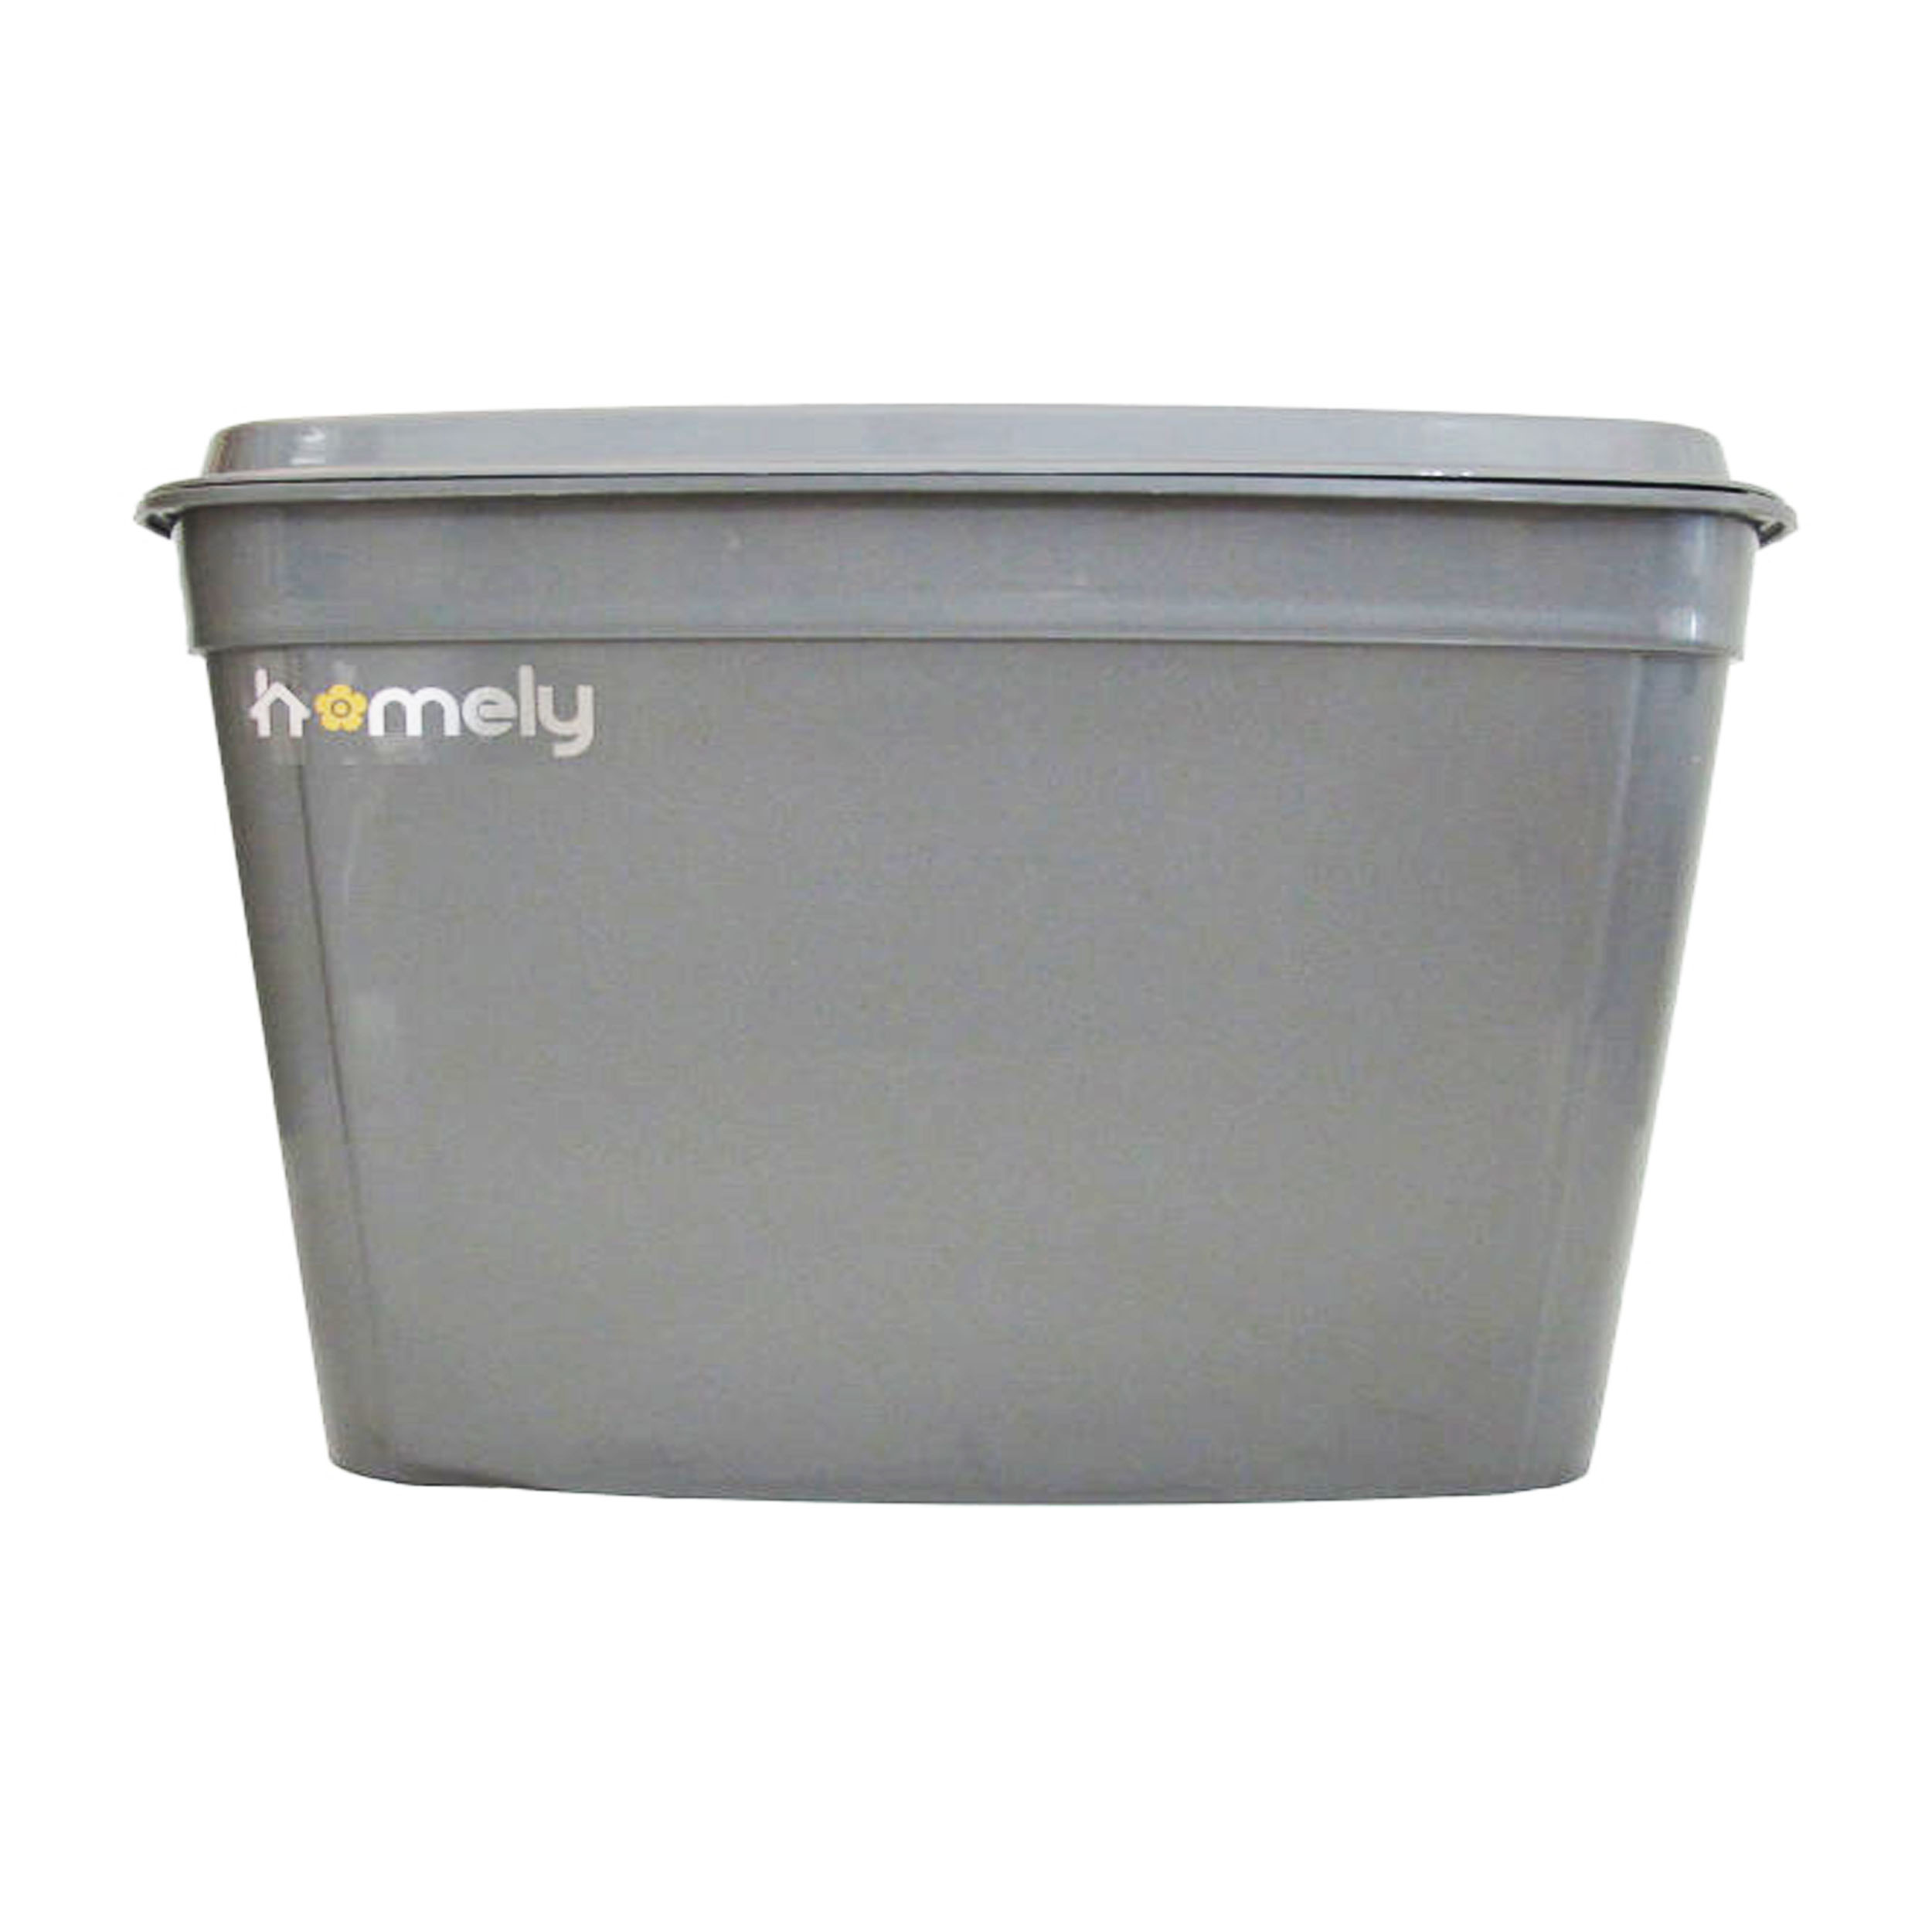 سطل زباله کابینتی homely مدل sh کد 102